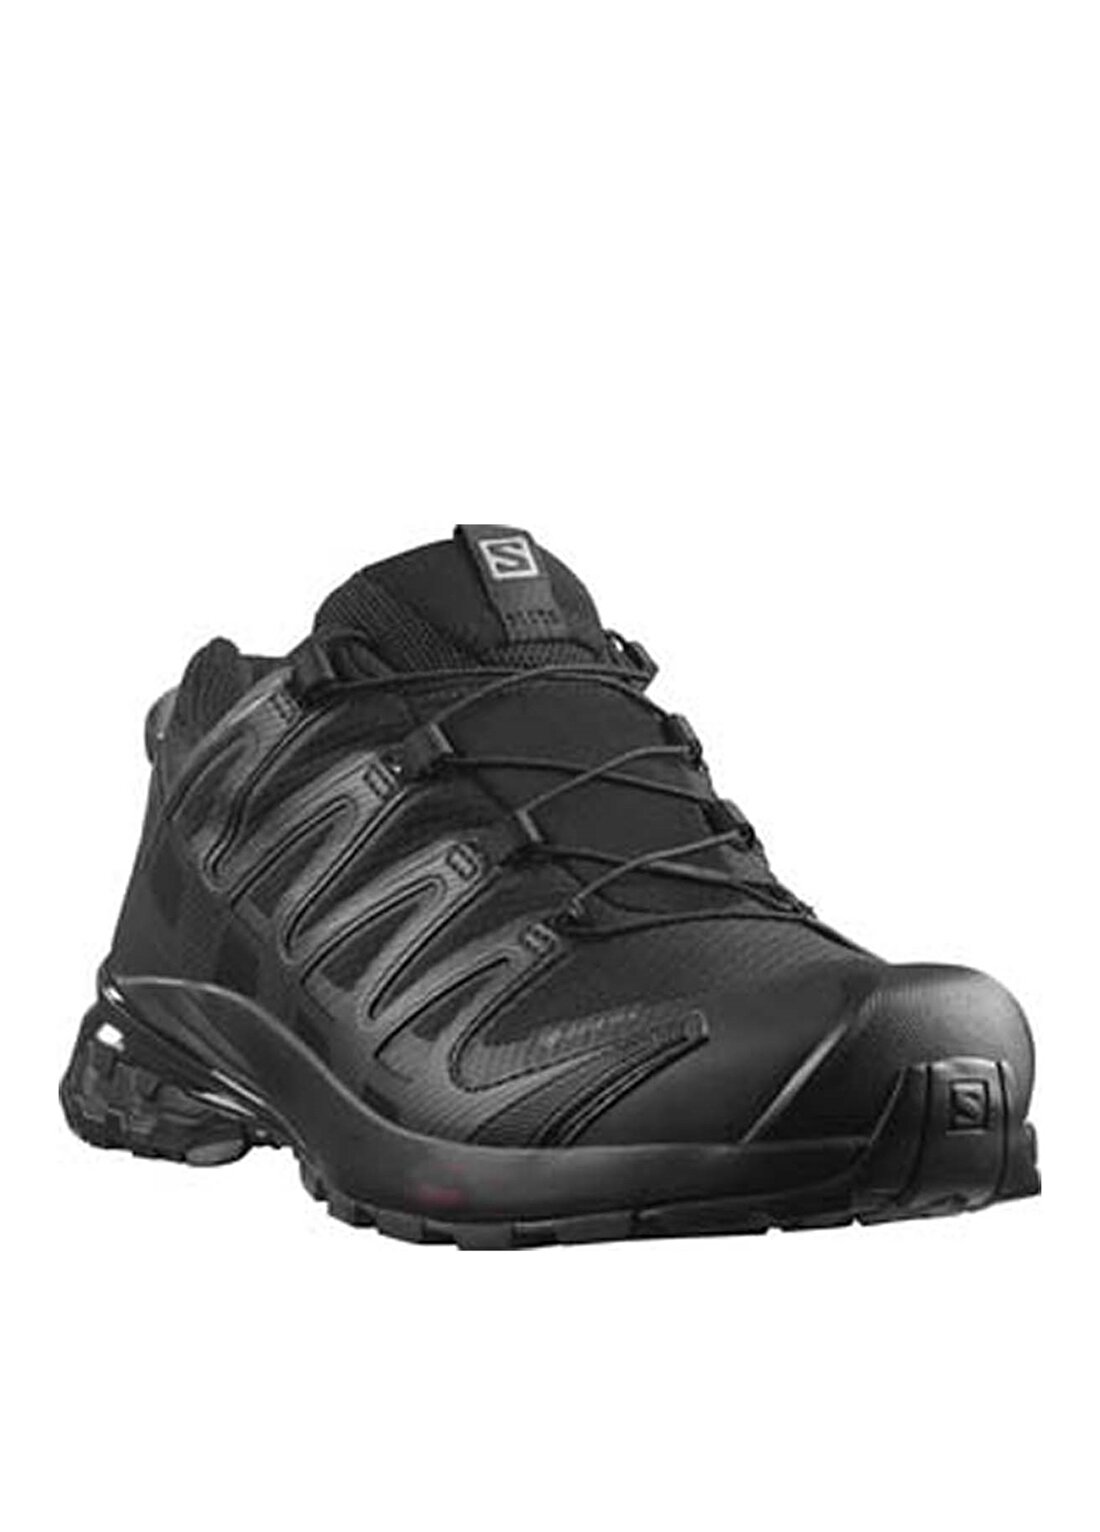 Salomon Siyah Kadın Koşu Ayakkabısı XA PRO 3D V8 GTX W Bk